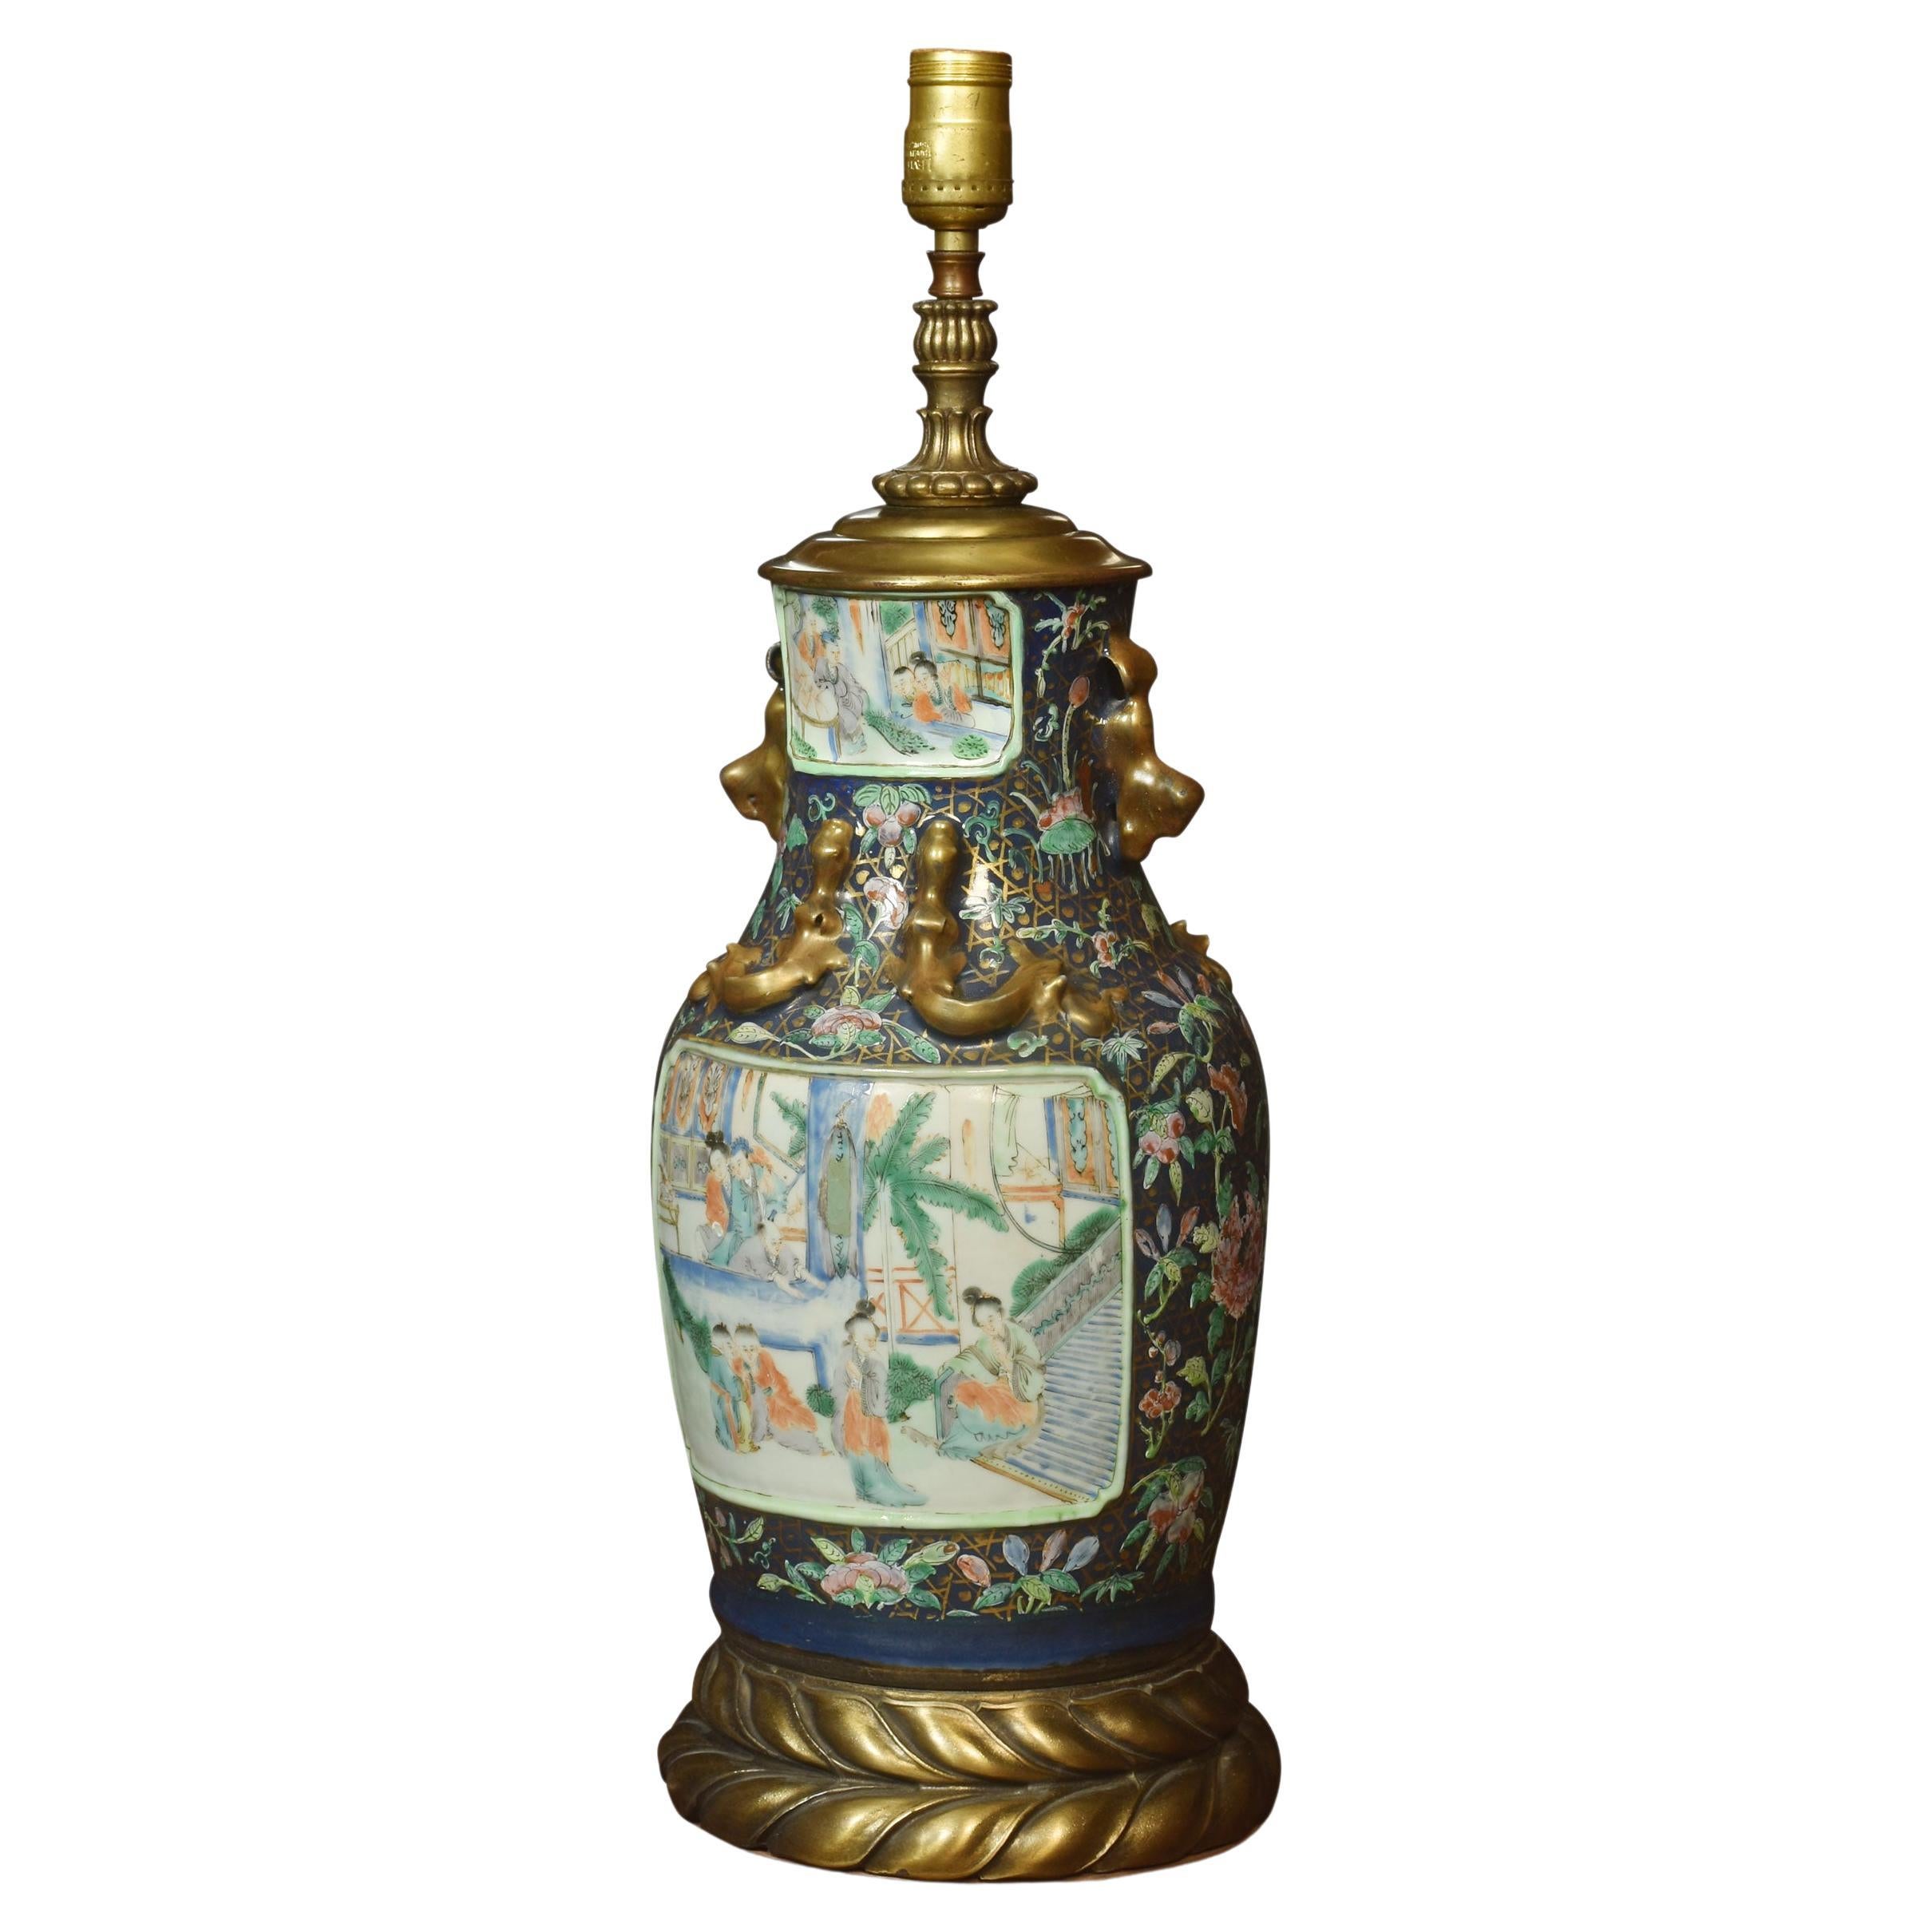 Chinease-Vasenlampe aus dem 19. Jahrhundert